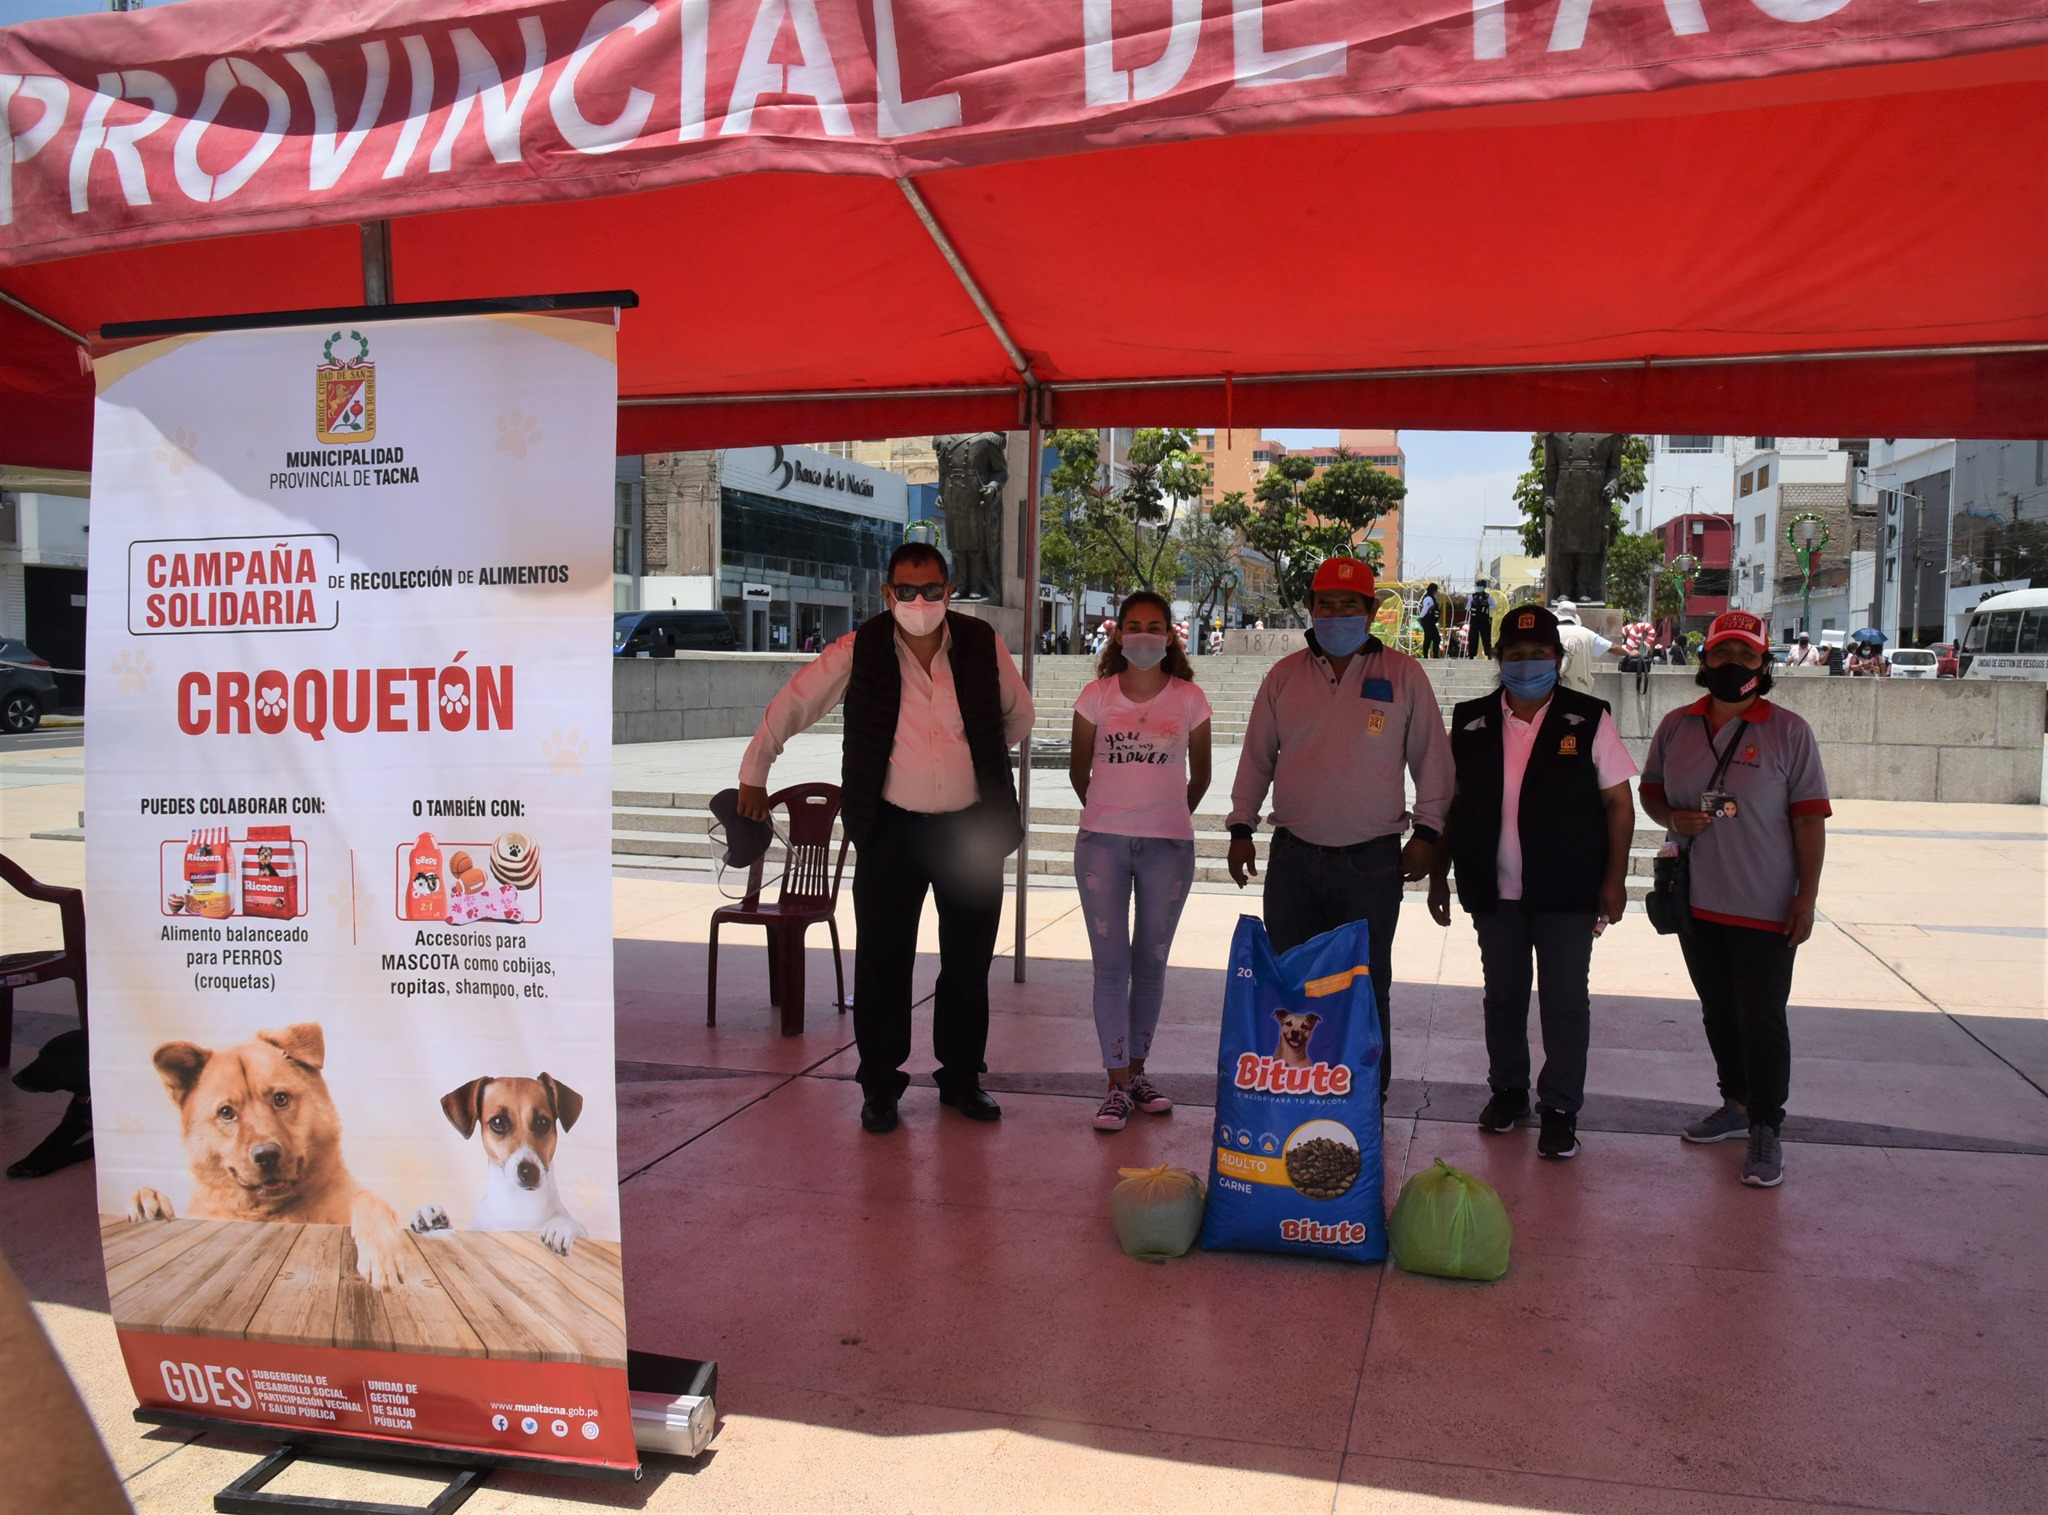 Tacna: Campaña solidaria de recolección de alimentos “croquetón”